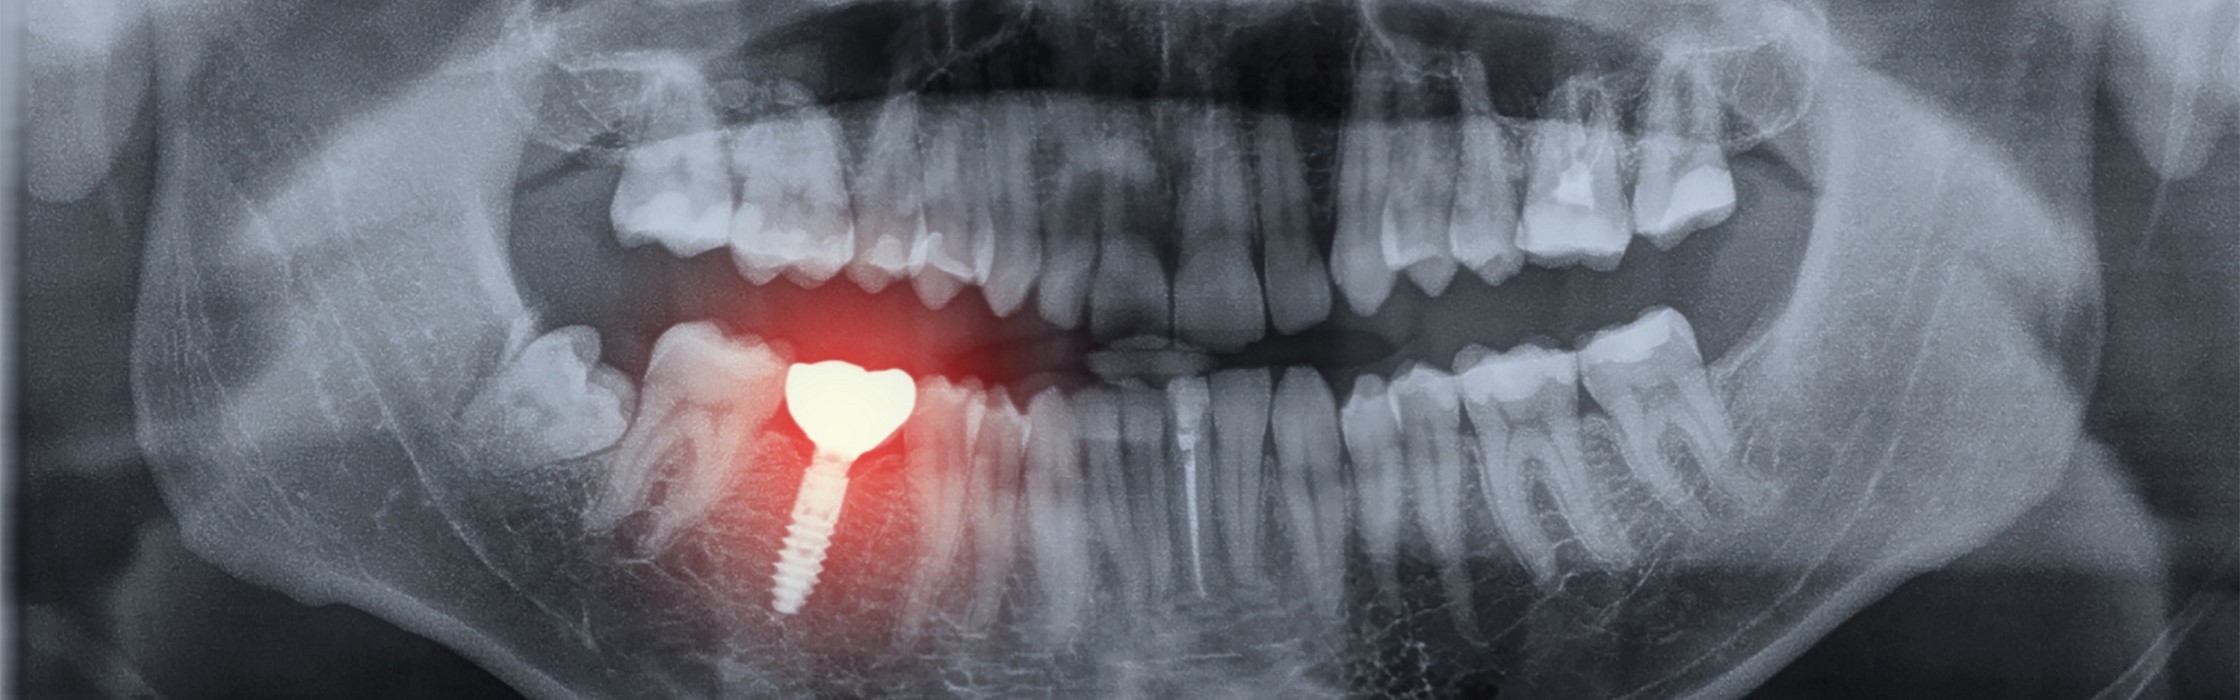 Periimplantitis: Entzündungen am Zahnimplantat erkennen und behandeln